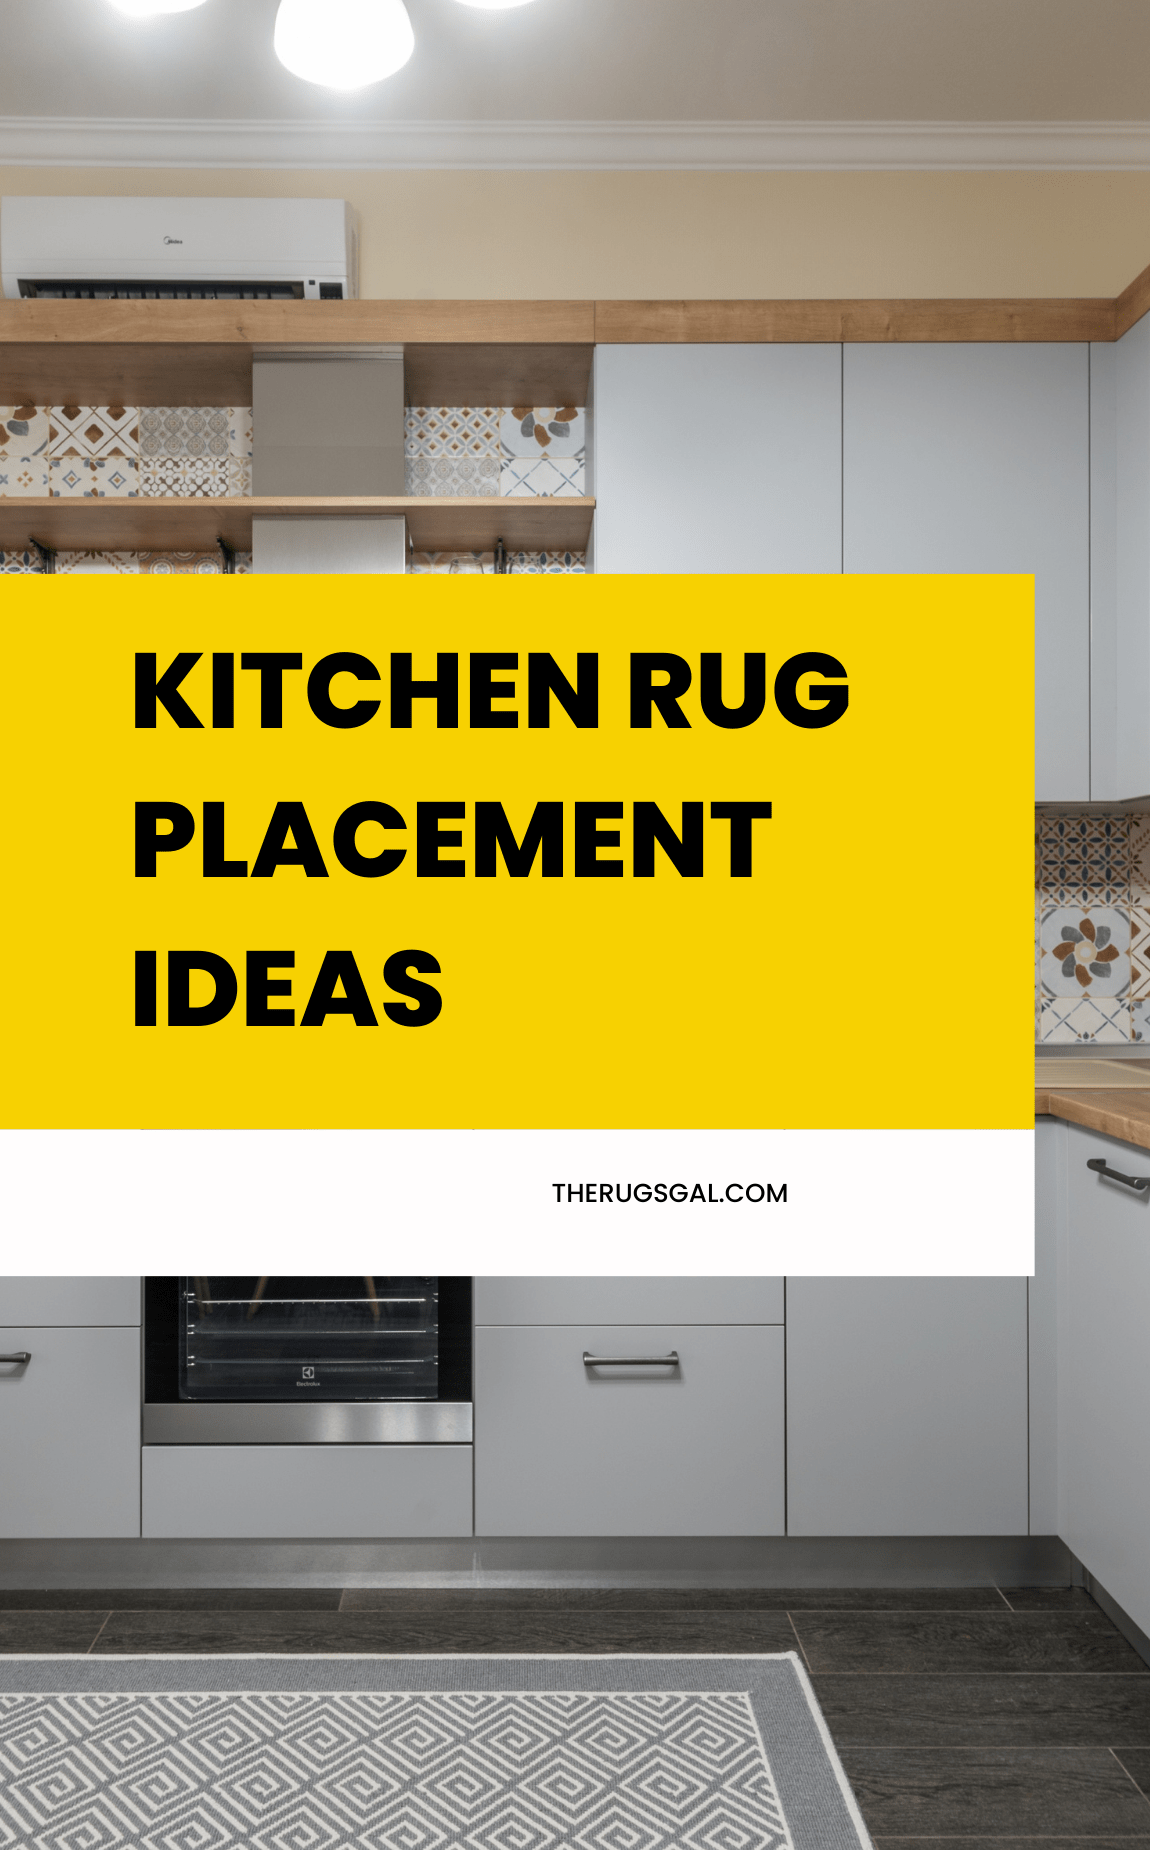 Kitchen Rug Placement Ideas